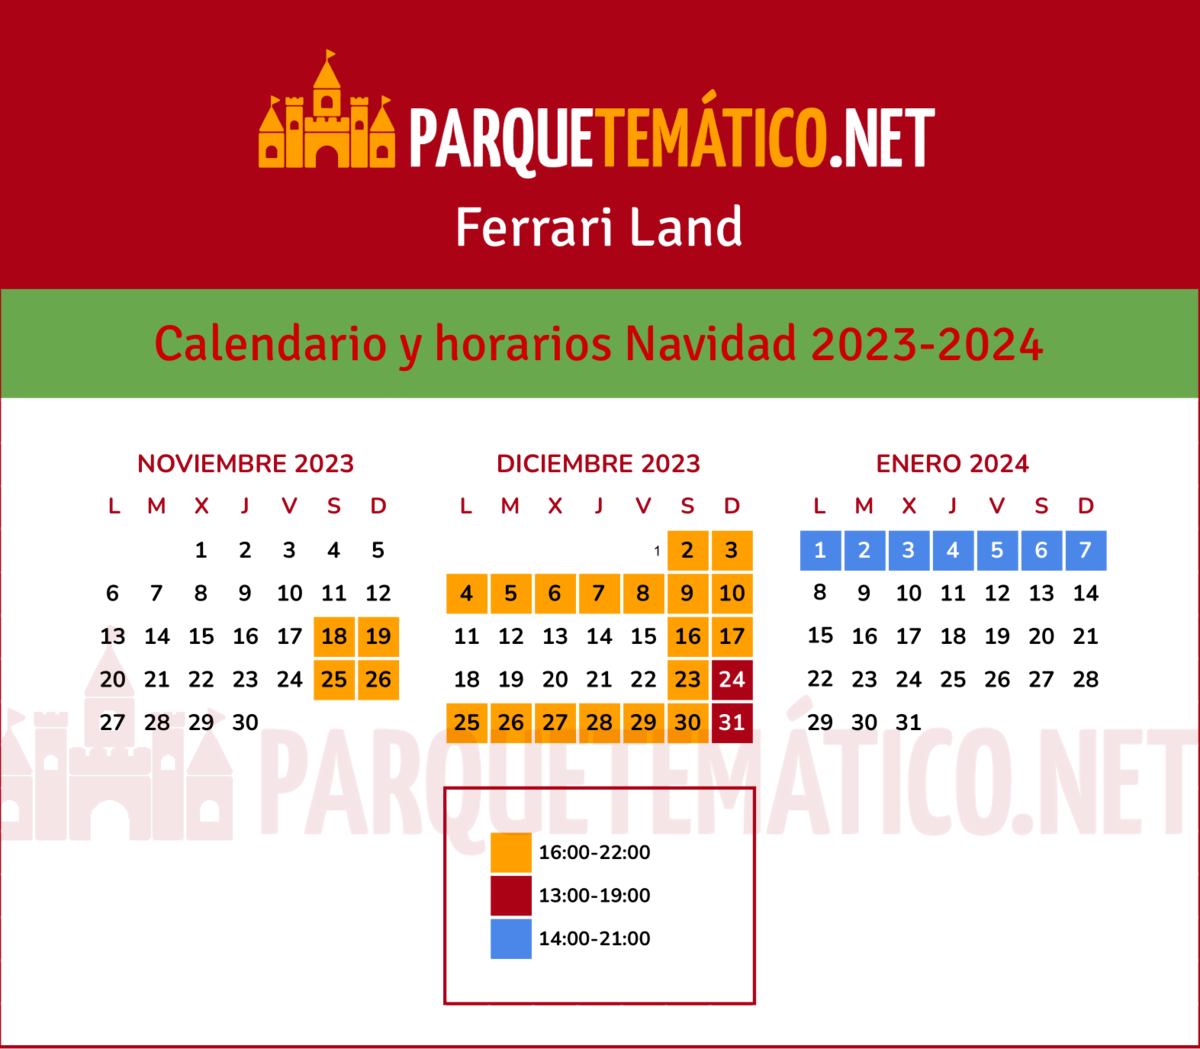 Calendario y Horarios Navidad Ferrari Land 2023 2024